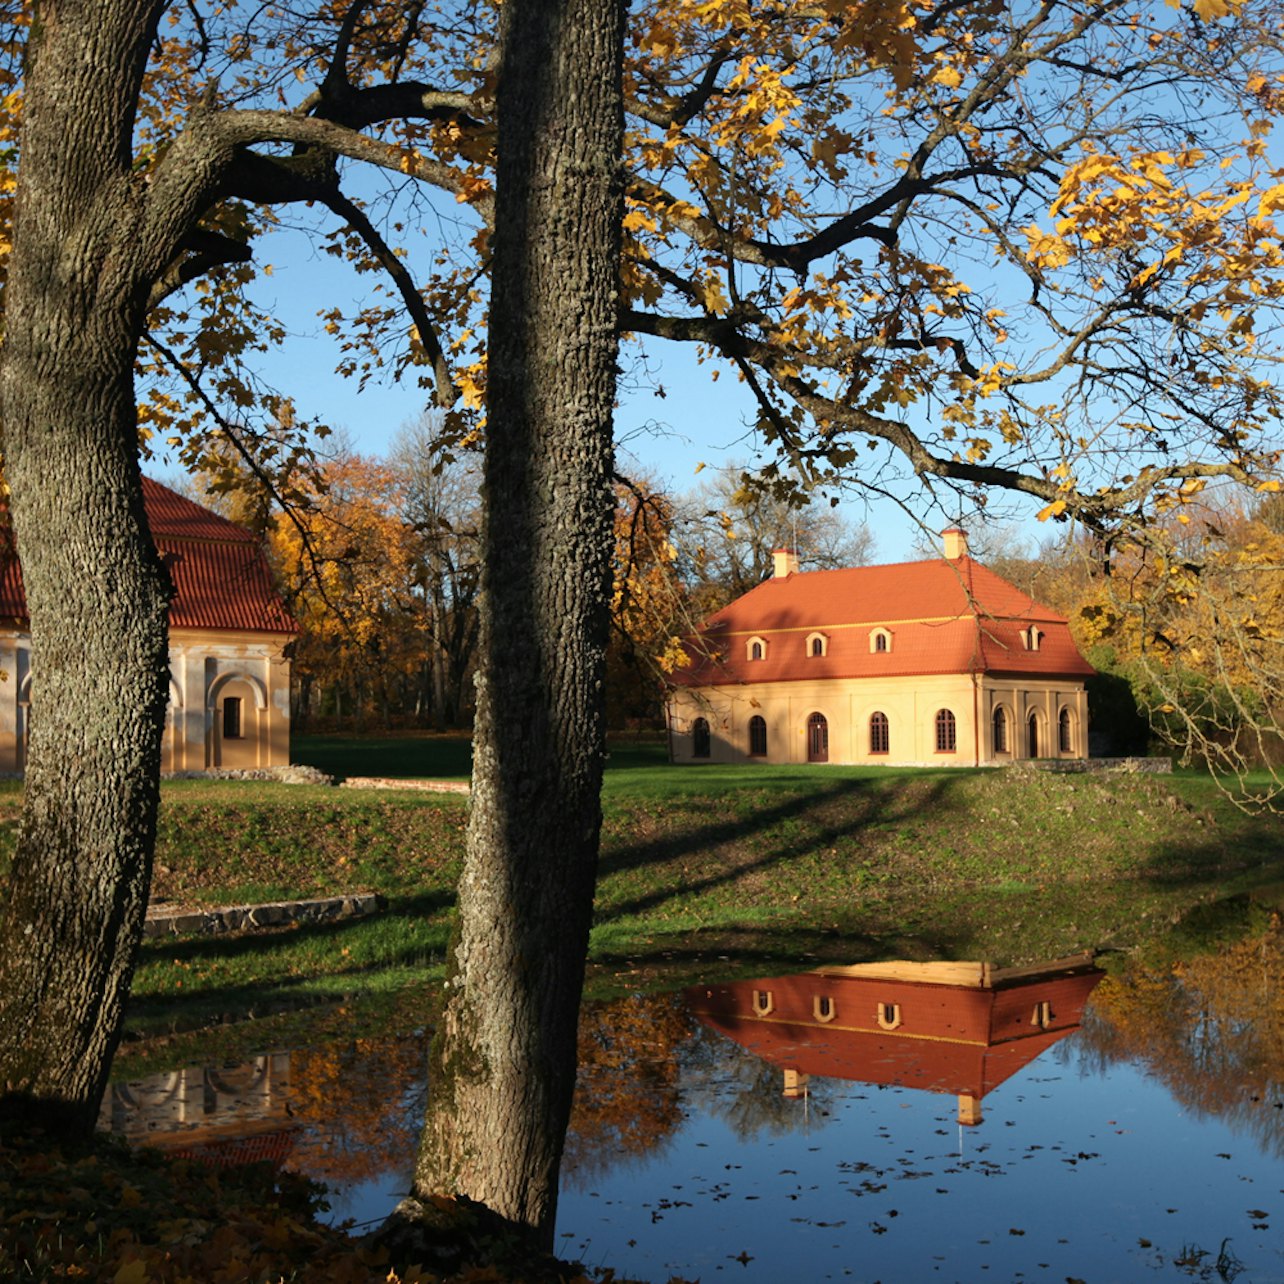 Liubavas Manor-Museum e Europos Parkas: bilhete combinado - Acomodações em Vilnius